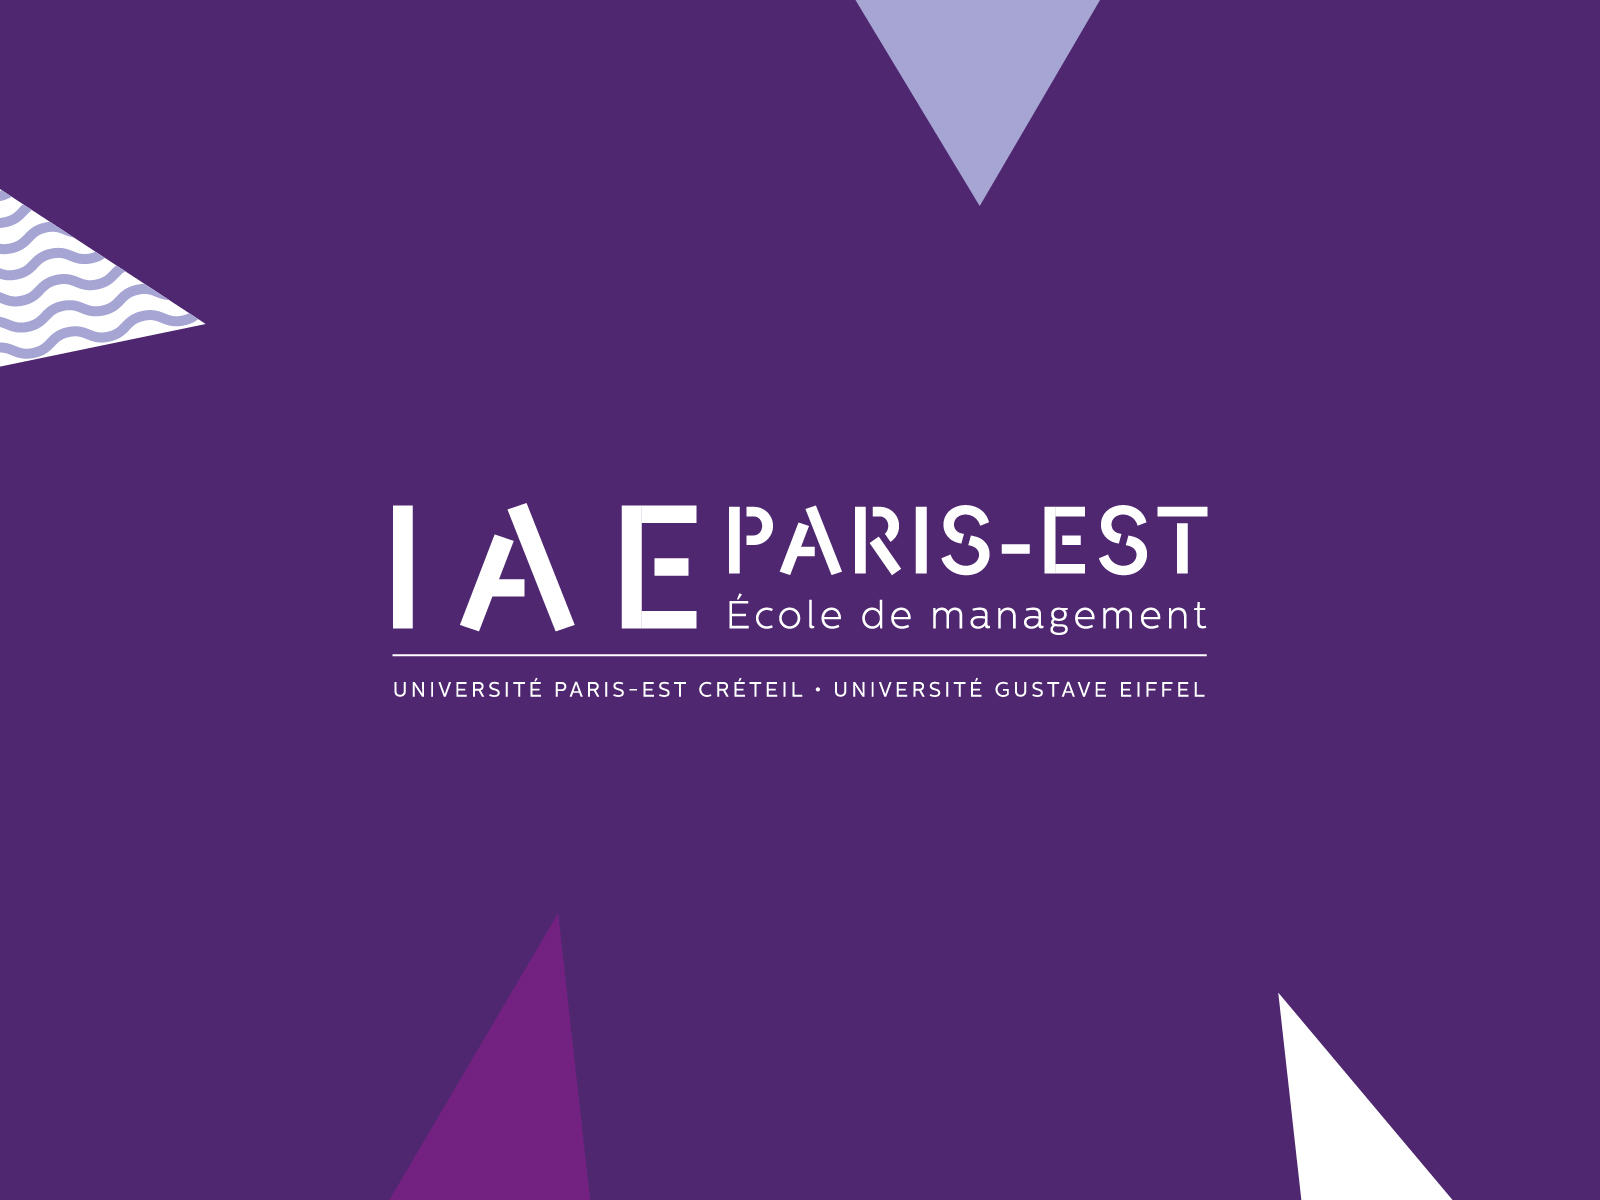 Une nouvelle stratégie de marque pour l’IAE Paris-Est